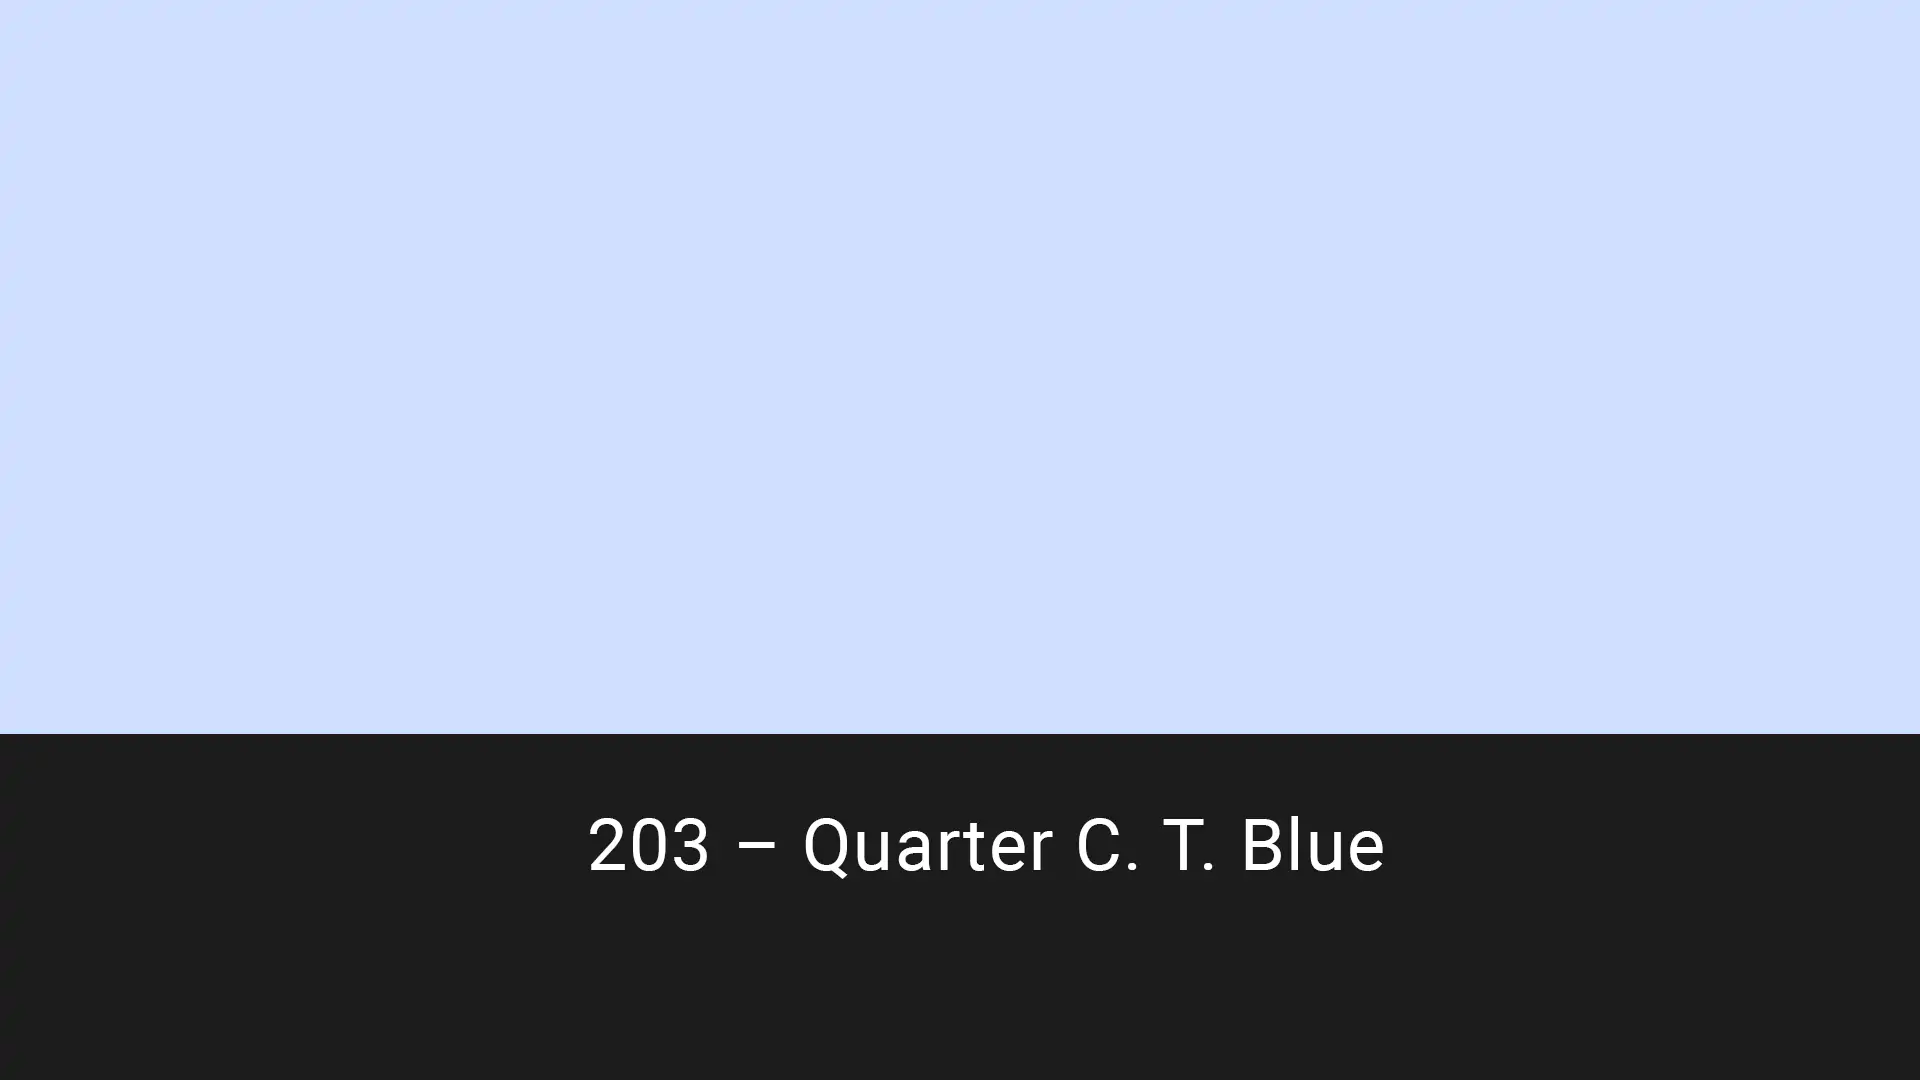 Cotech filters 203 Quarter C.T. Blue